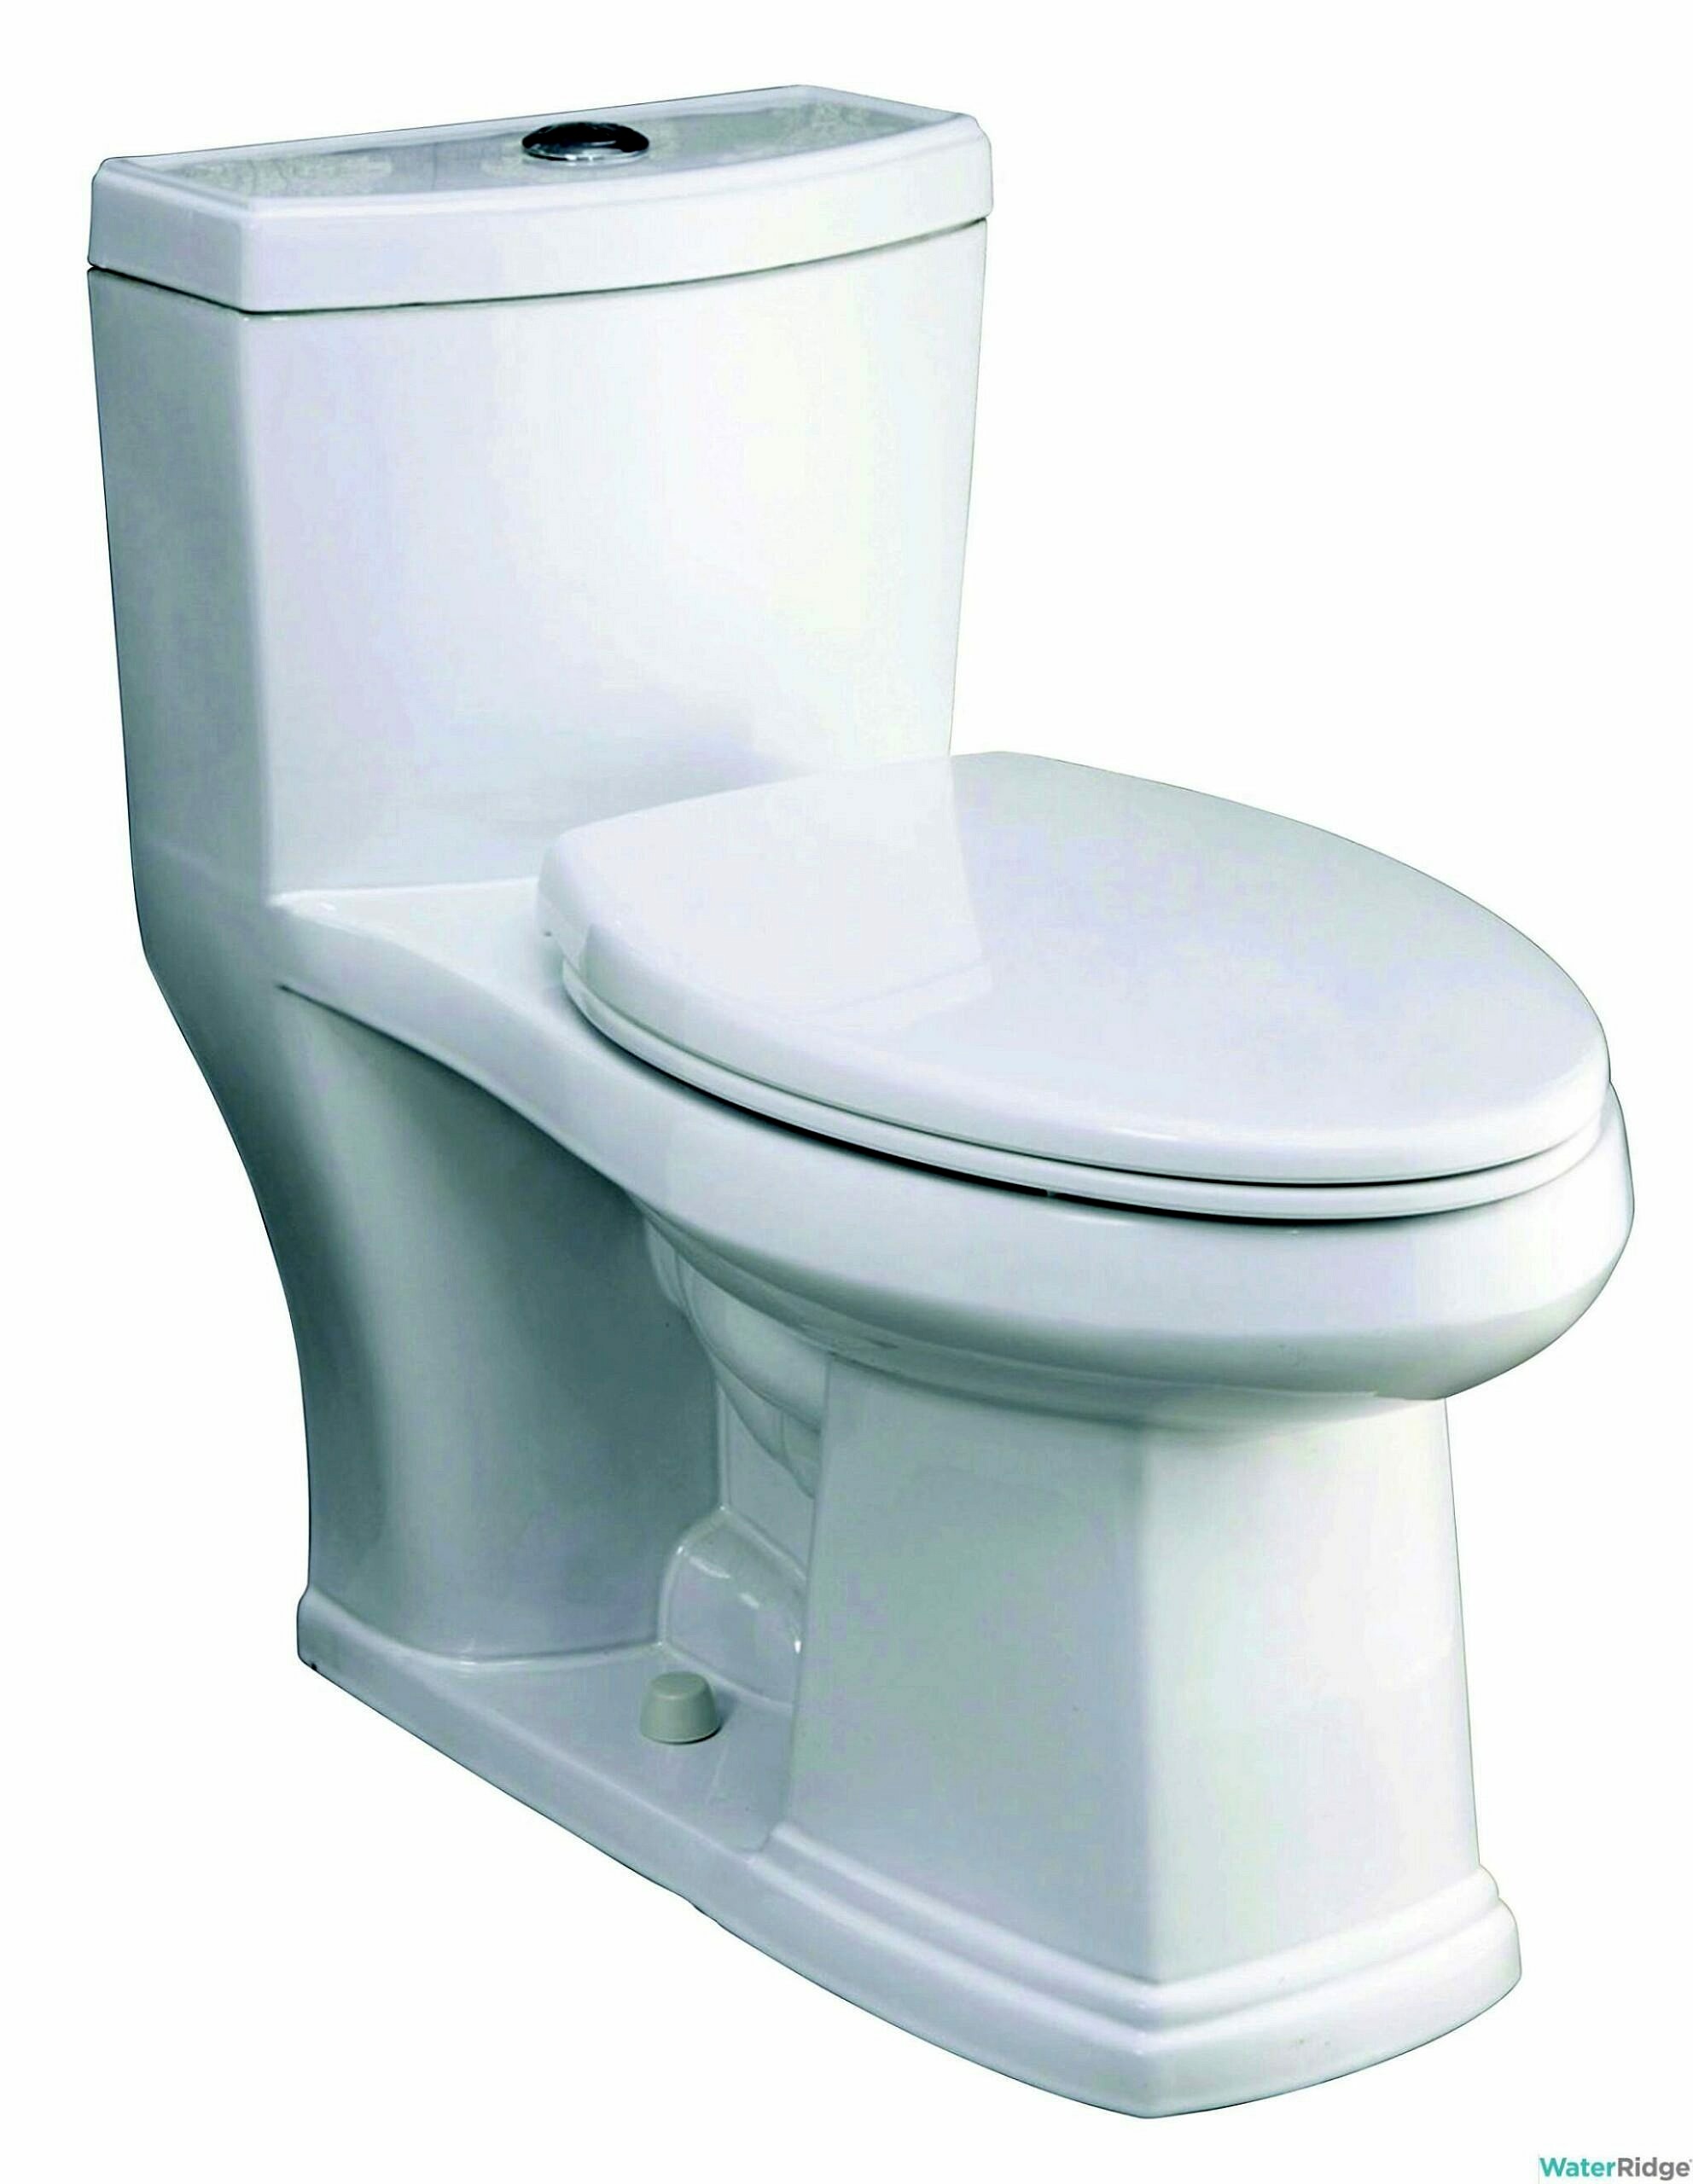 Toilettes Difficiles a Chasser Decouvrez Pourquoi Et Obtenez Nos Conseils Pour Resoudre Le Probleme